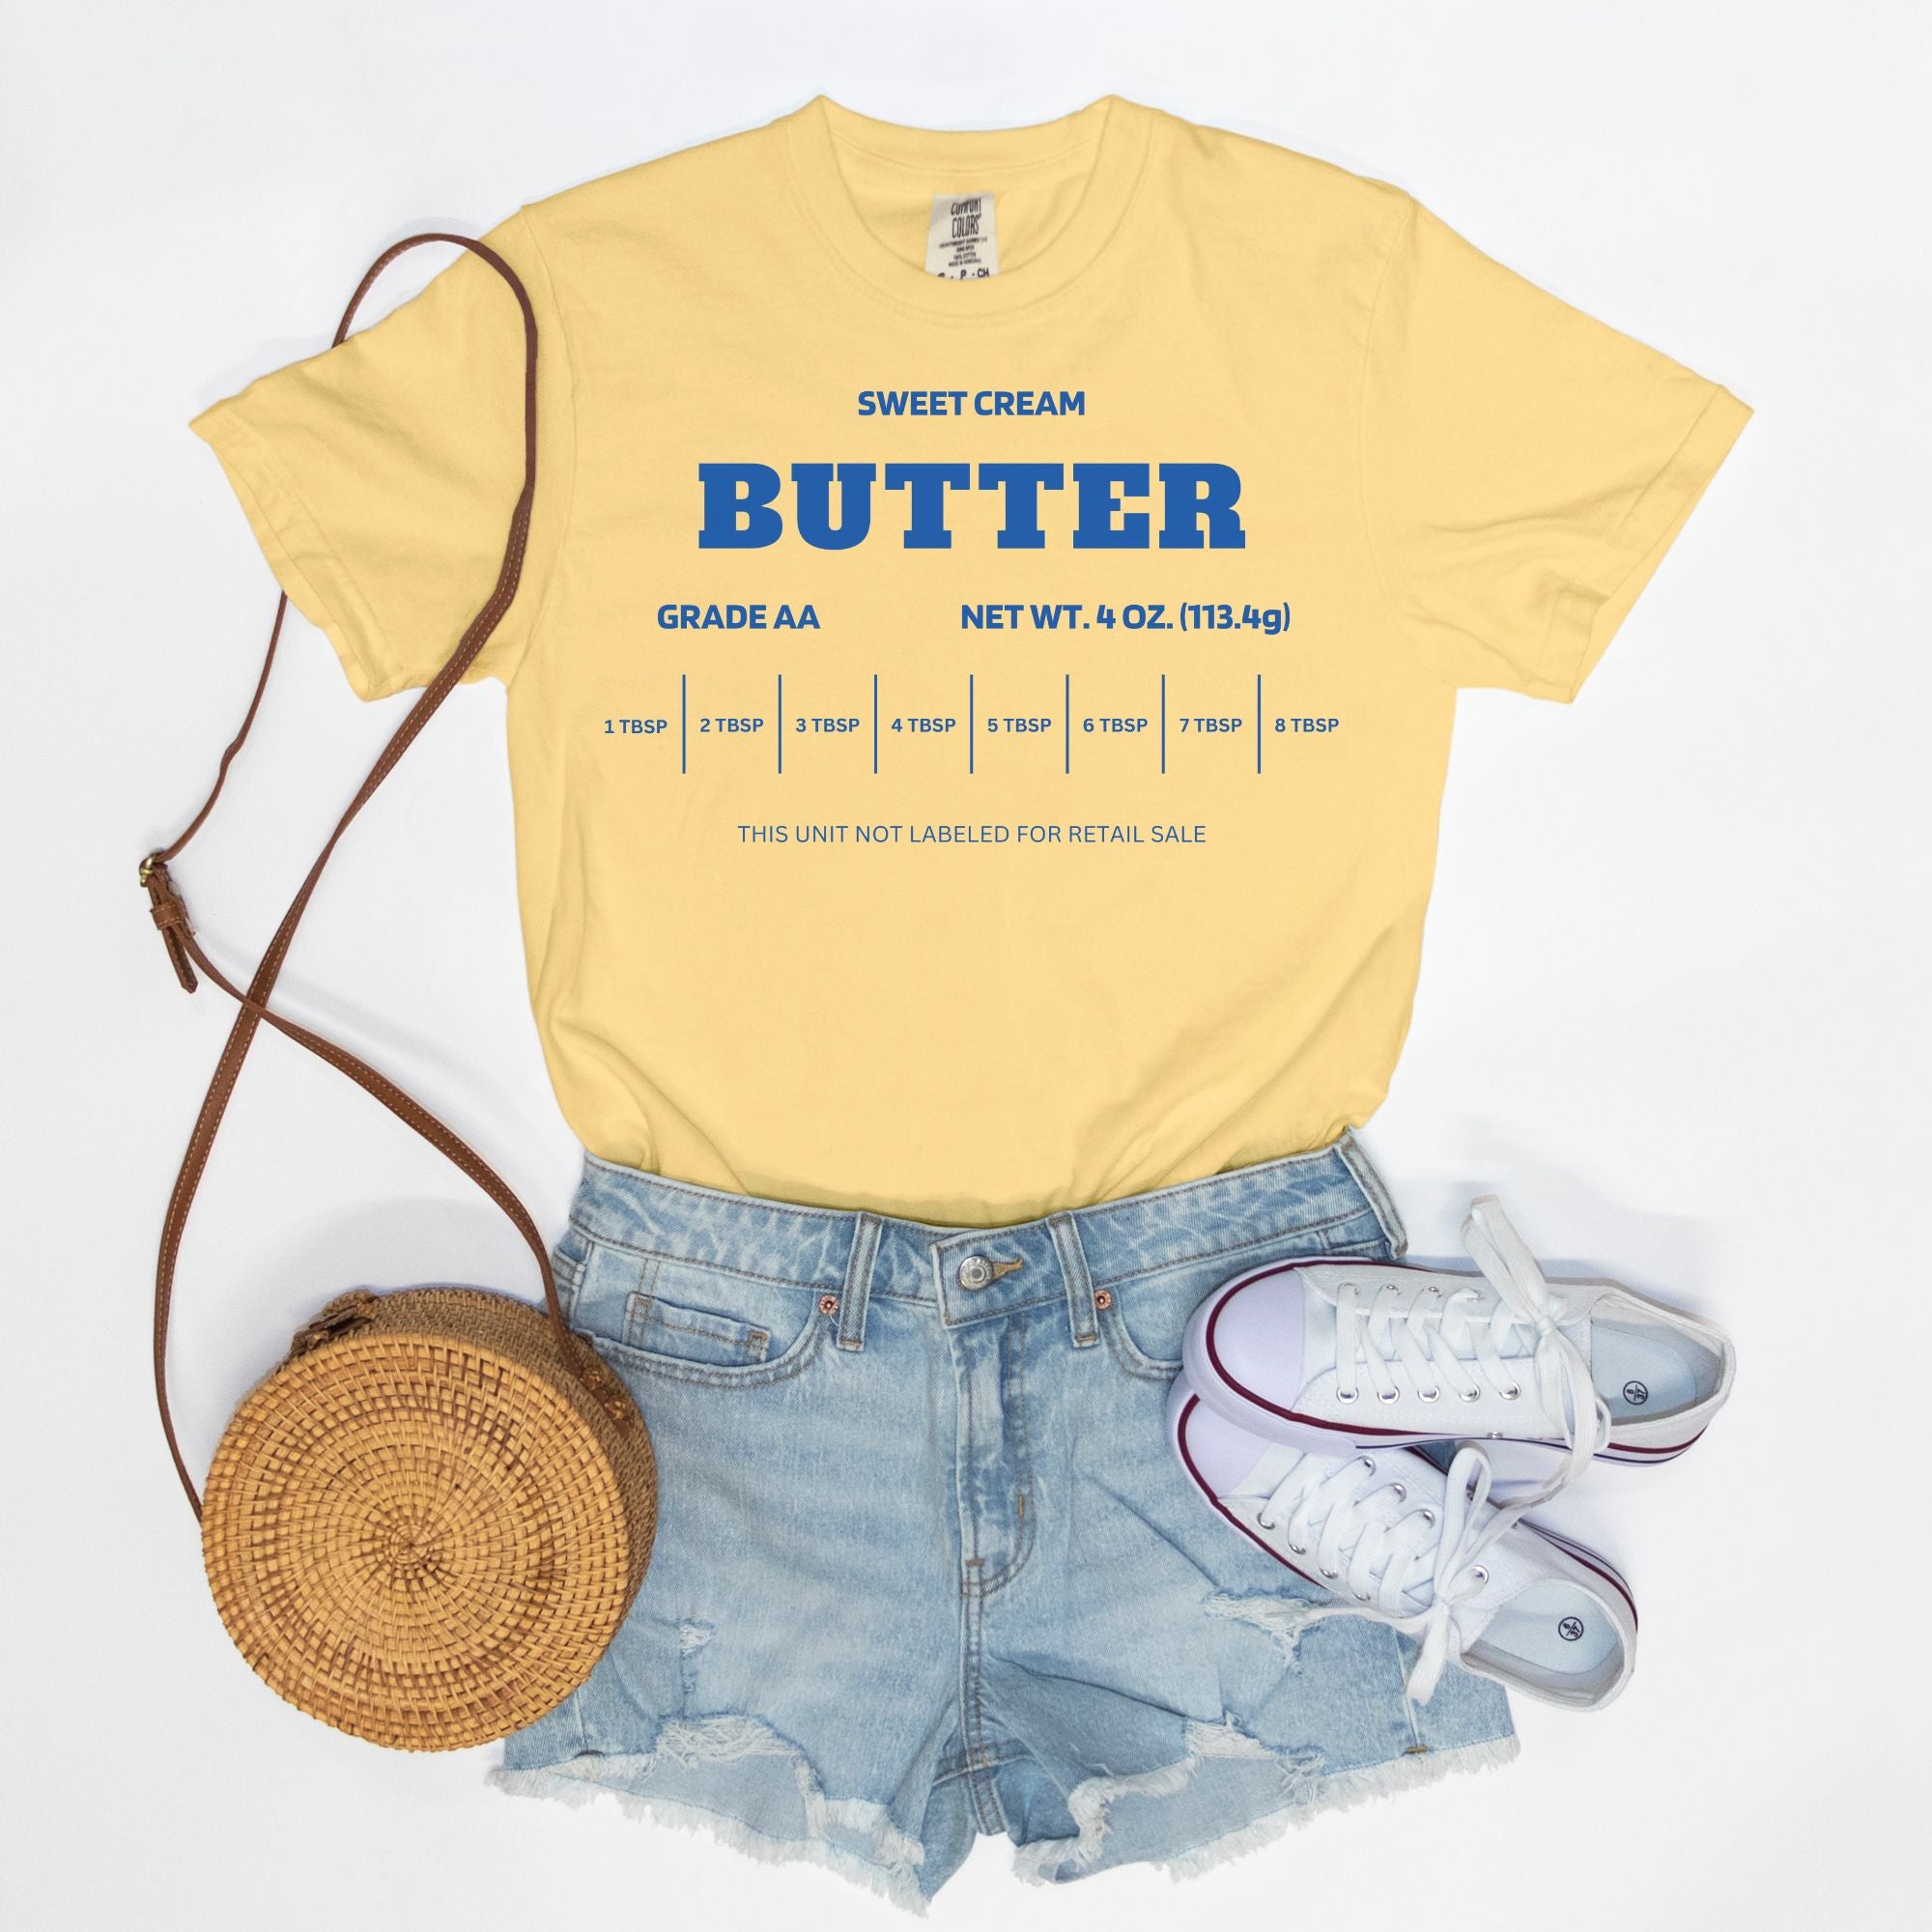 Sweet Cream Butter Tee Shirt - Adult